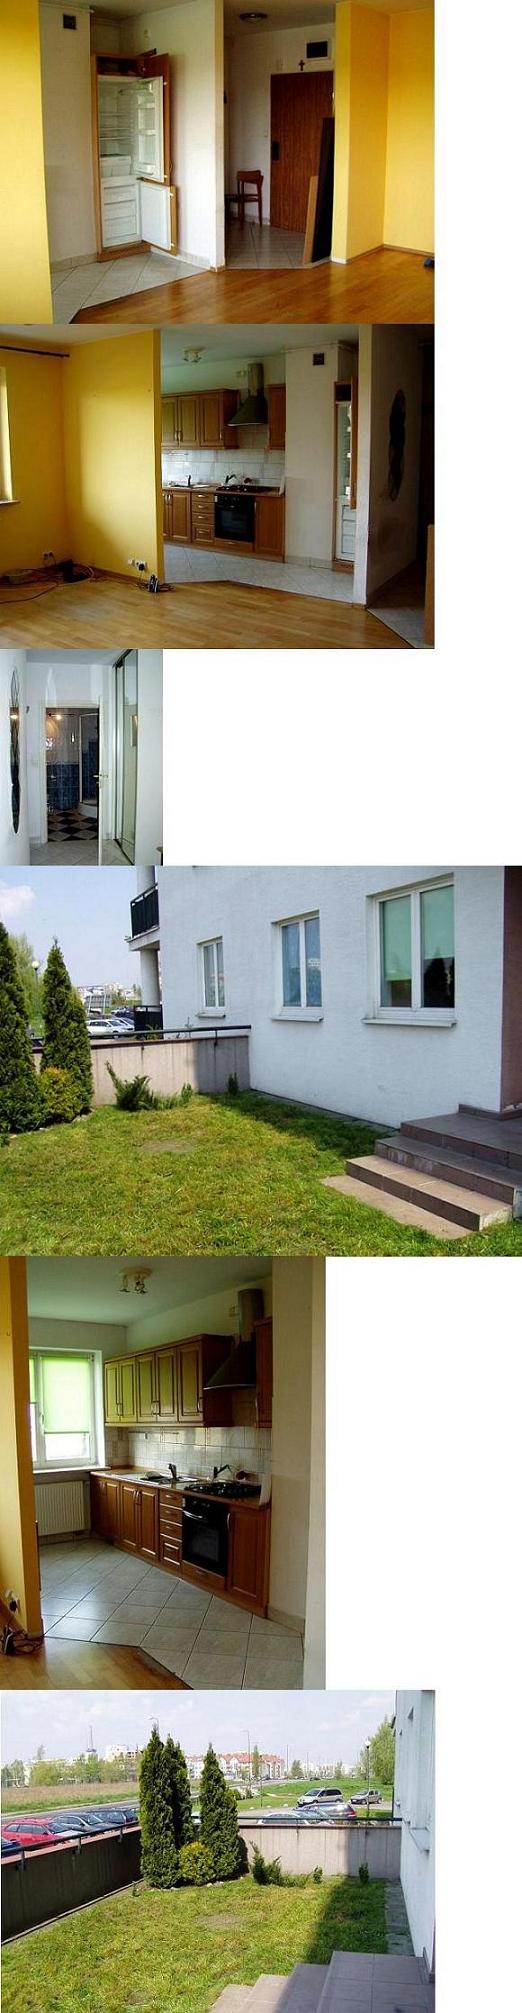 Zdjęcie do ogłoszenia Ursynow, 51 m2,2 pokoje,wysoki parter, taras z ogródkiem,częsciowo umeblowane, miejsce garażowe